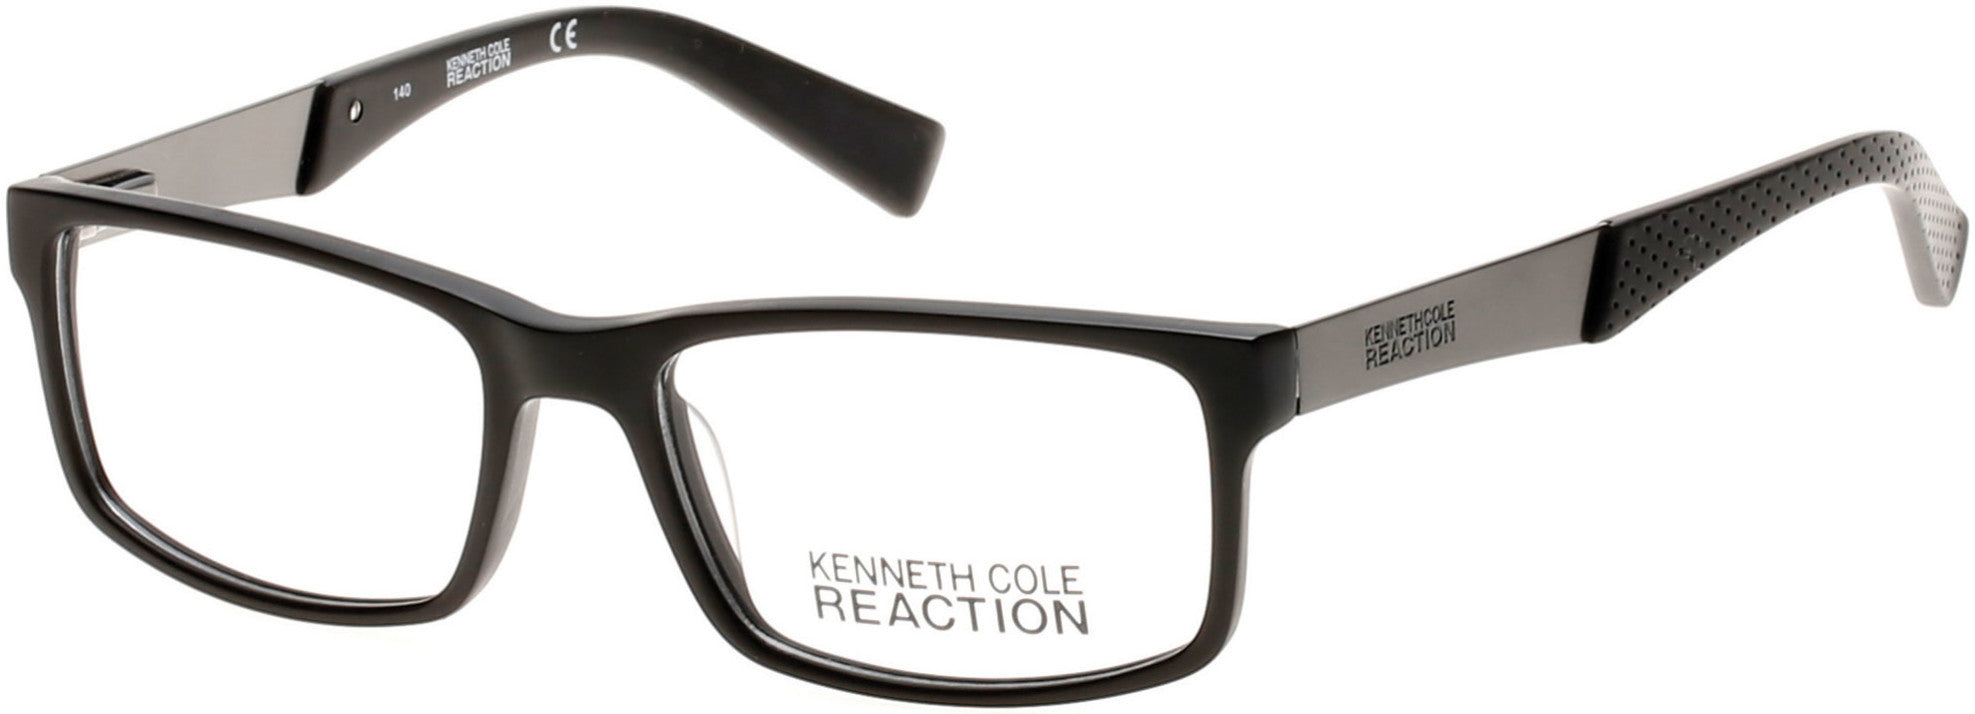 Kenneth Cole New York,Kenneth Cole Reaction KC0771 Eyeglasses 002-002 - Matte Black